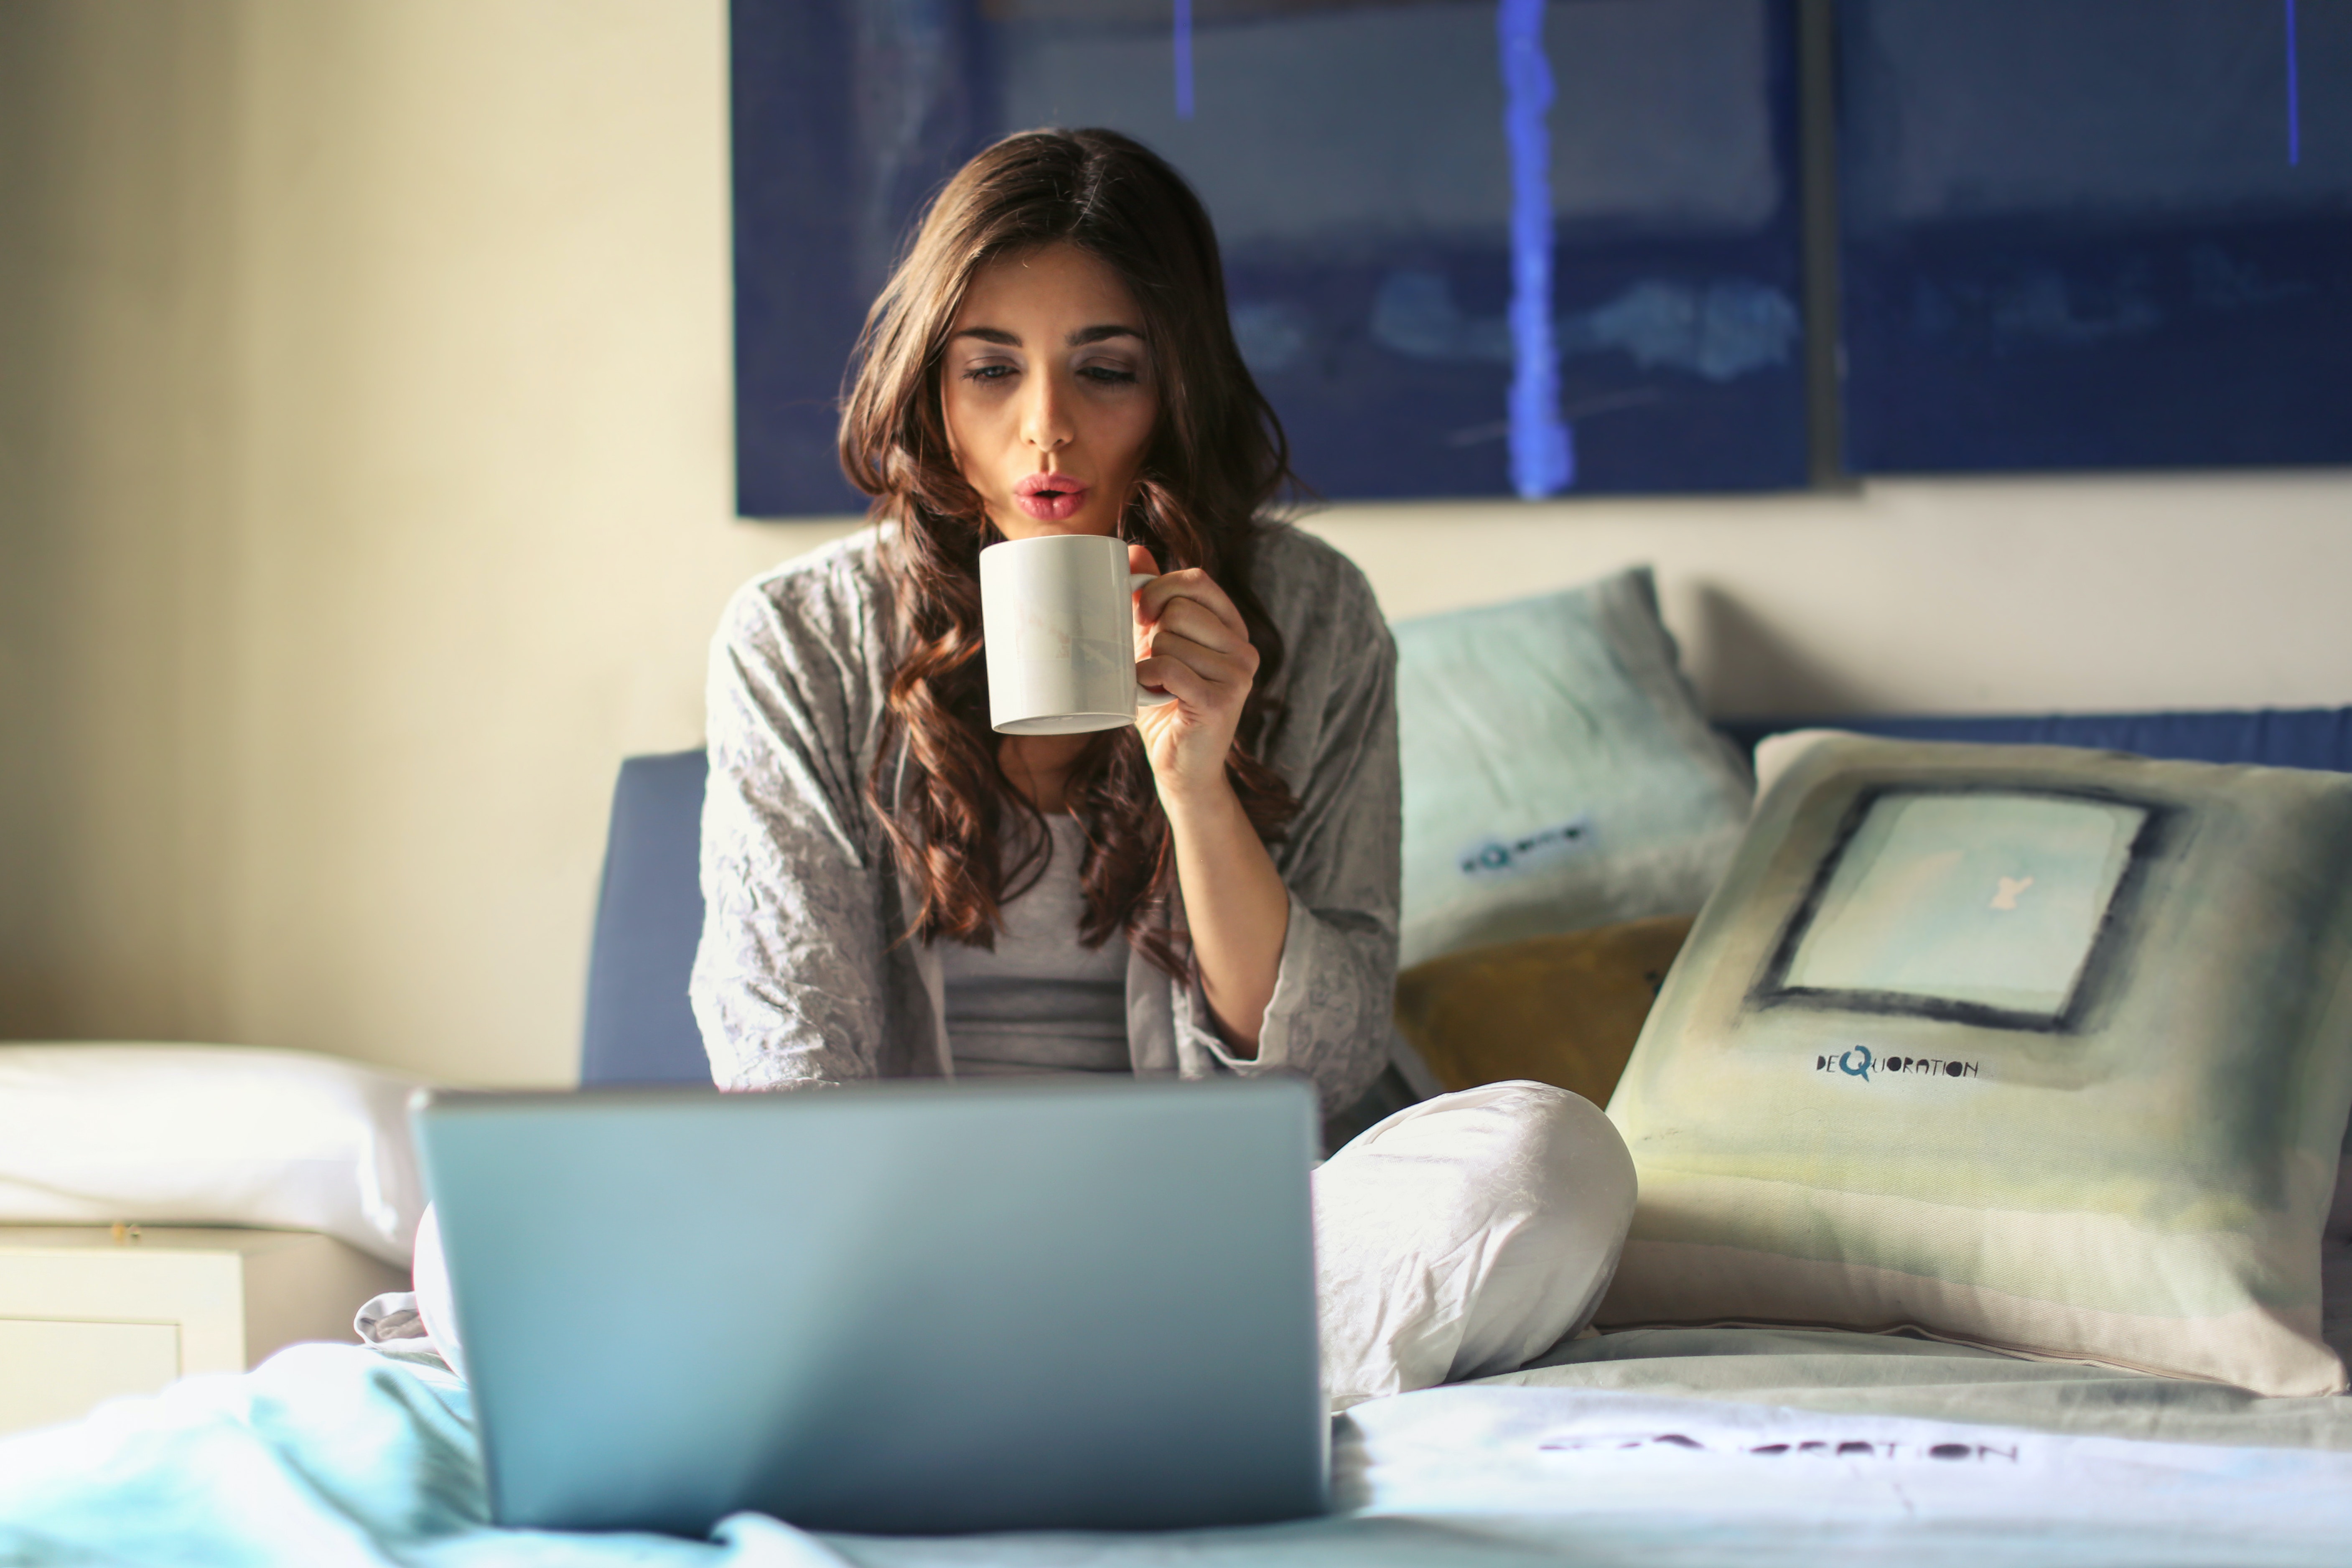 침대 위에서 커피를 마시며 인터넷 쇼핑을 하는 여성